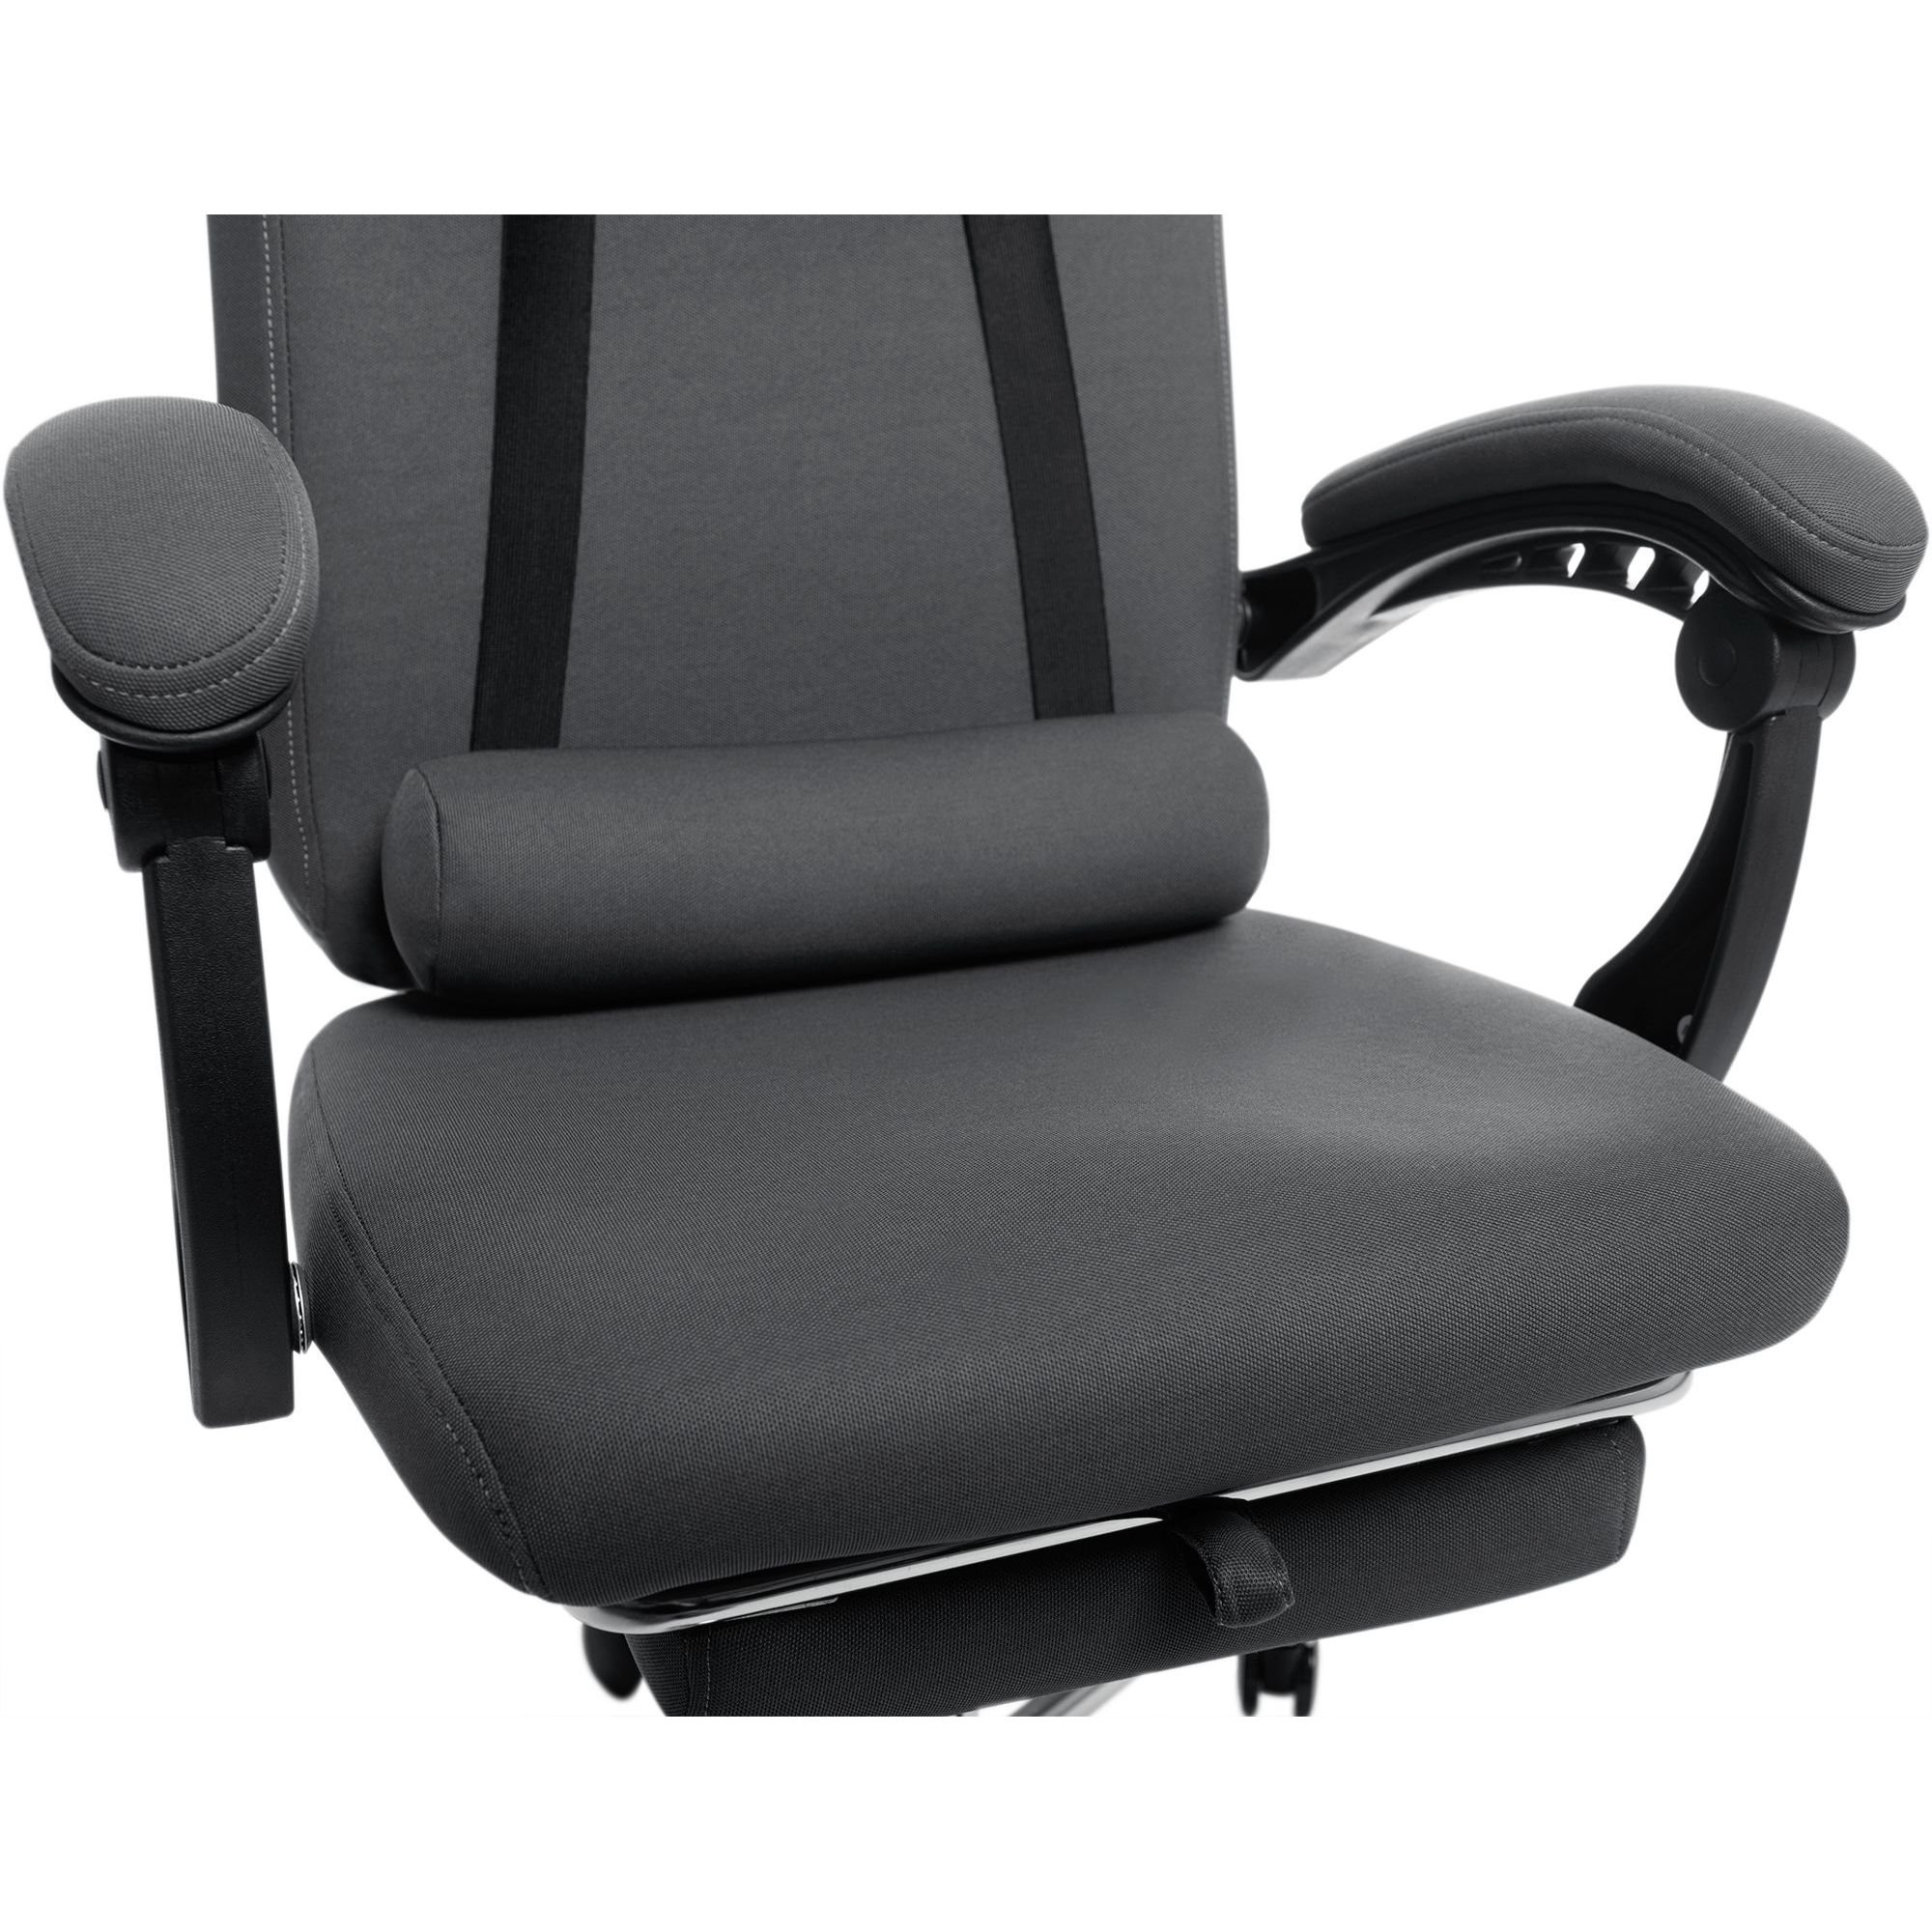 Офисное кресло GT Racer X-8003 Fabric, серое (X-8003 Gray) - фото 11